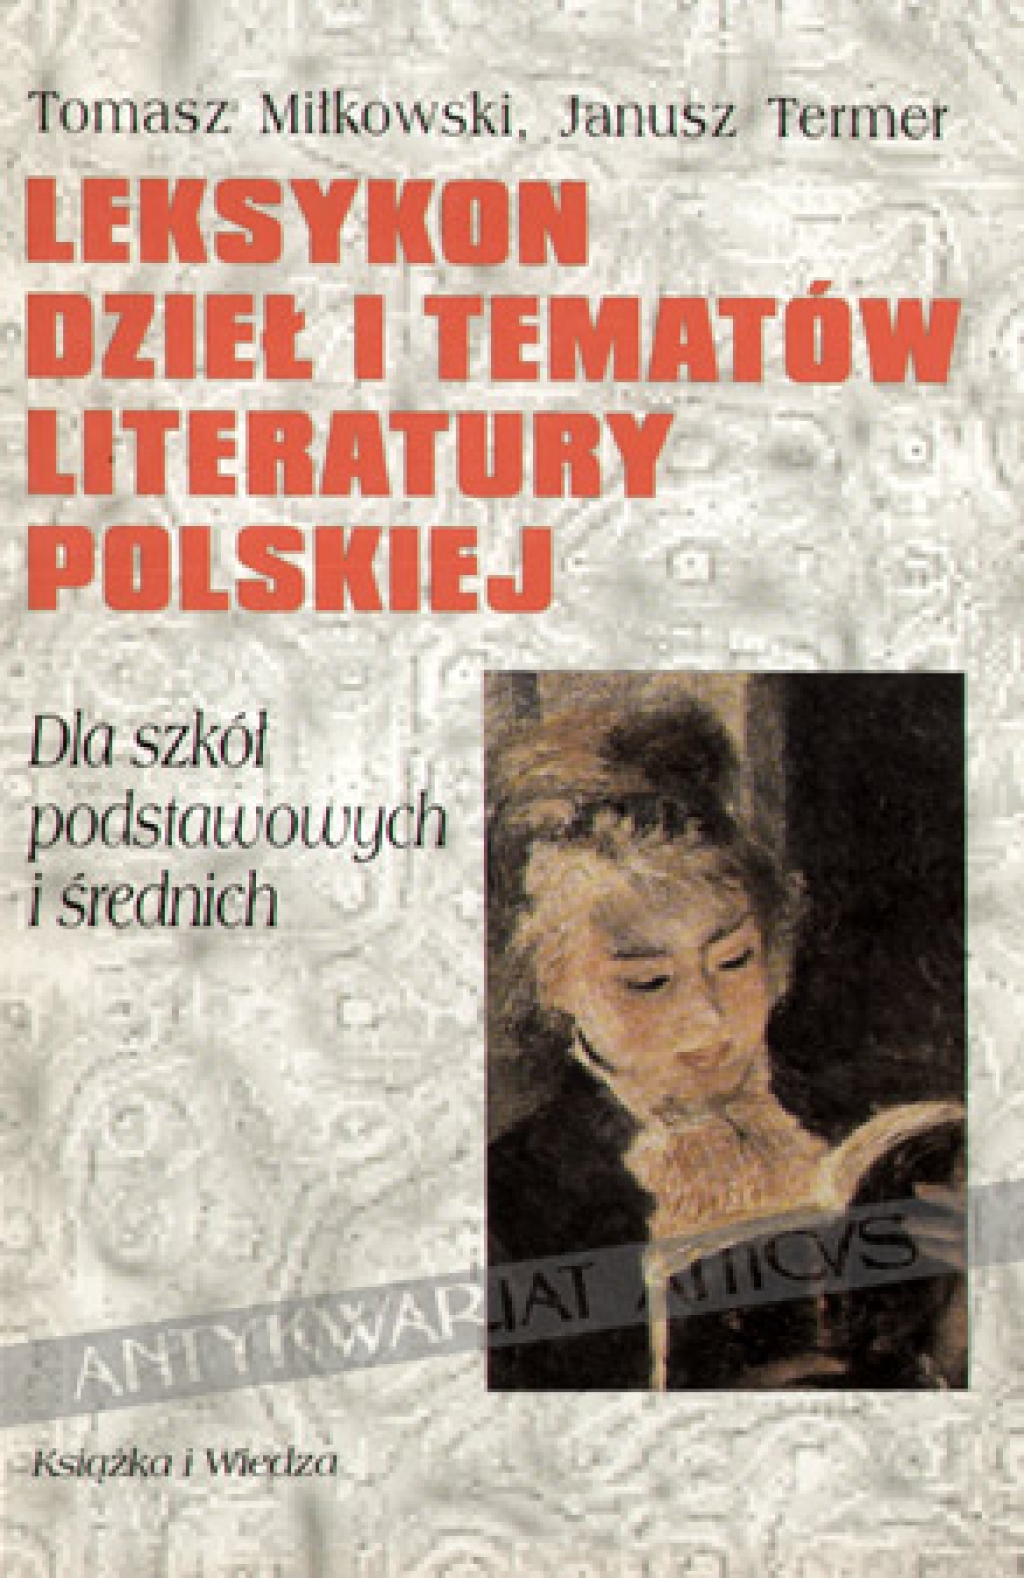 Leksykon dzieł i tematów literatury polskiej. Dla szkół podstawowych i średnich 